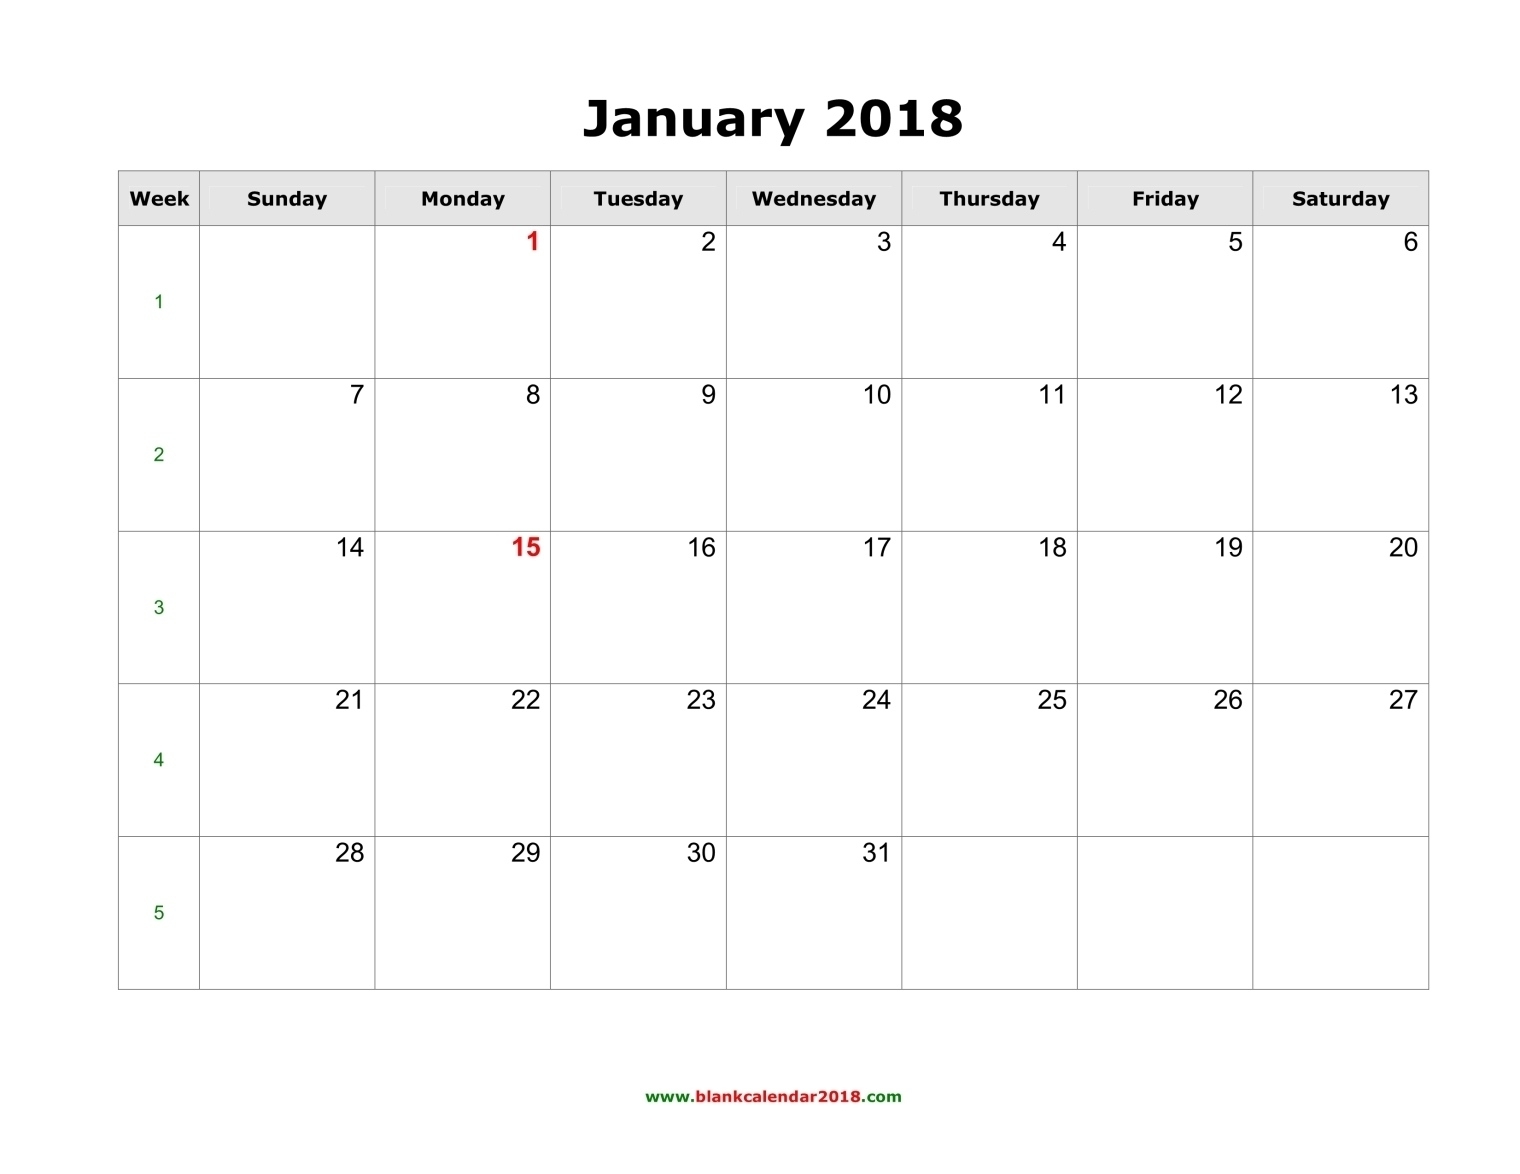 Blank Calendar 2018 Blank Calendar Month View